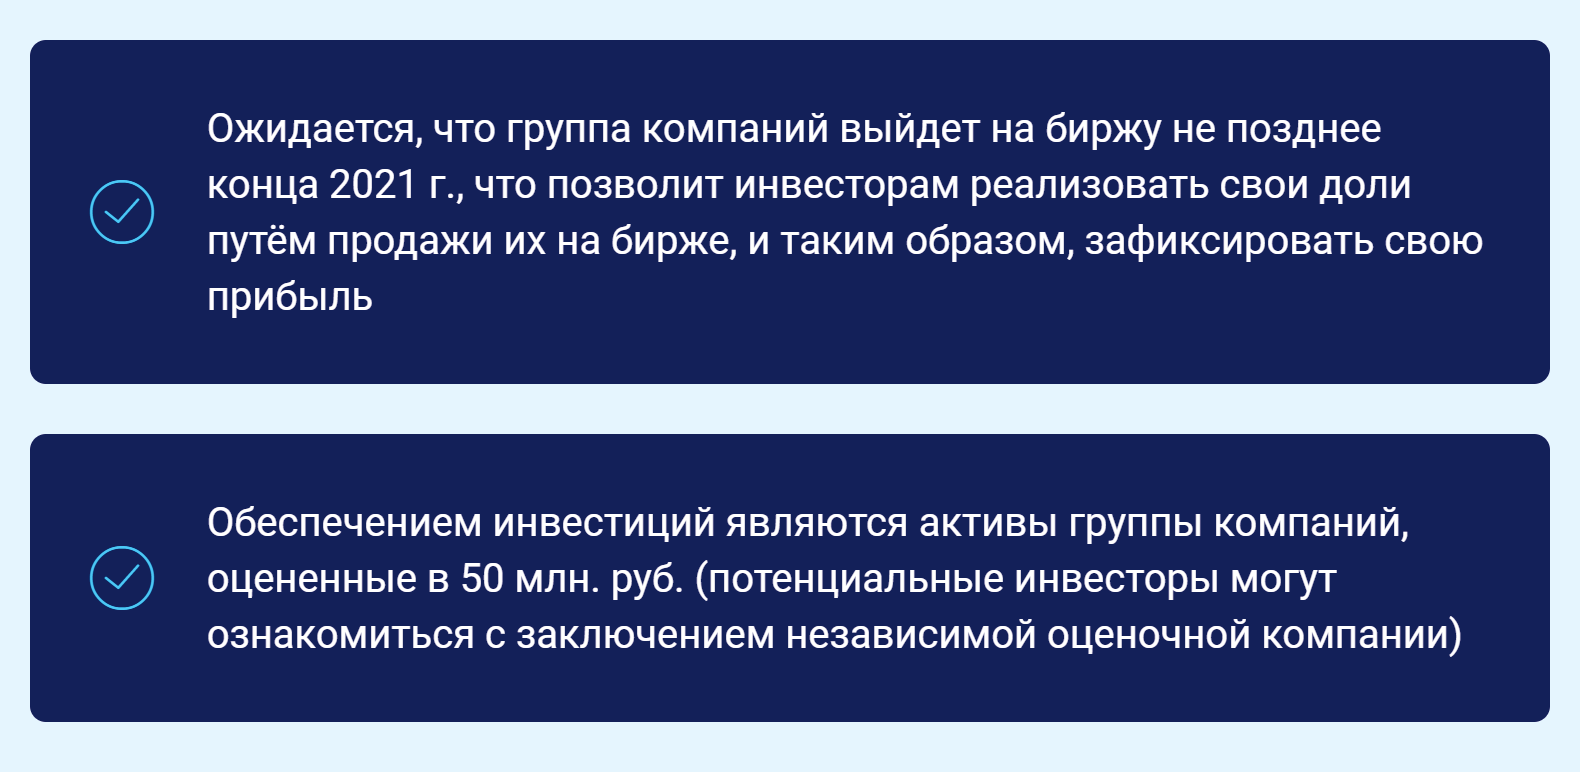 «Окто-груп» пишет, что надежность инвестиций обеспечивают активы на 50 млн рублей. Но для выхода на биржу их мало — а компания уверяет, что у нее получится это сделать в 2021 году